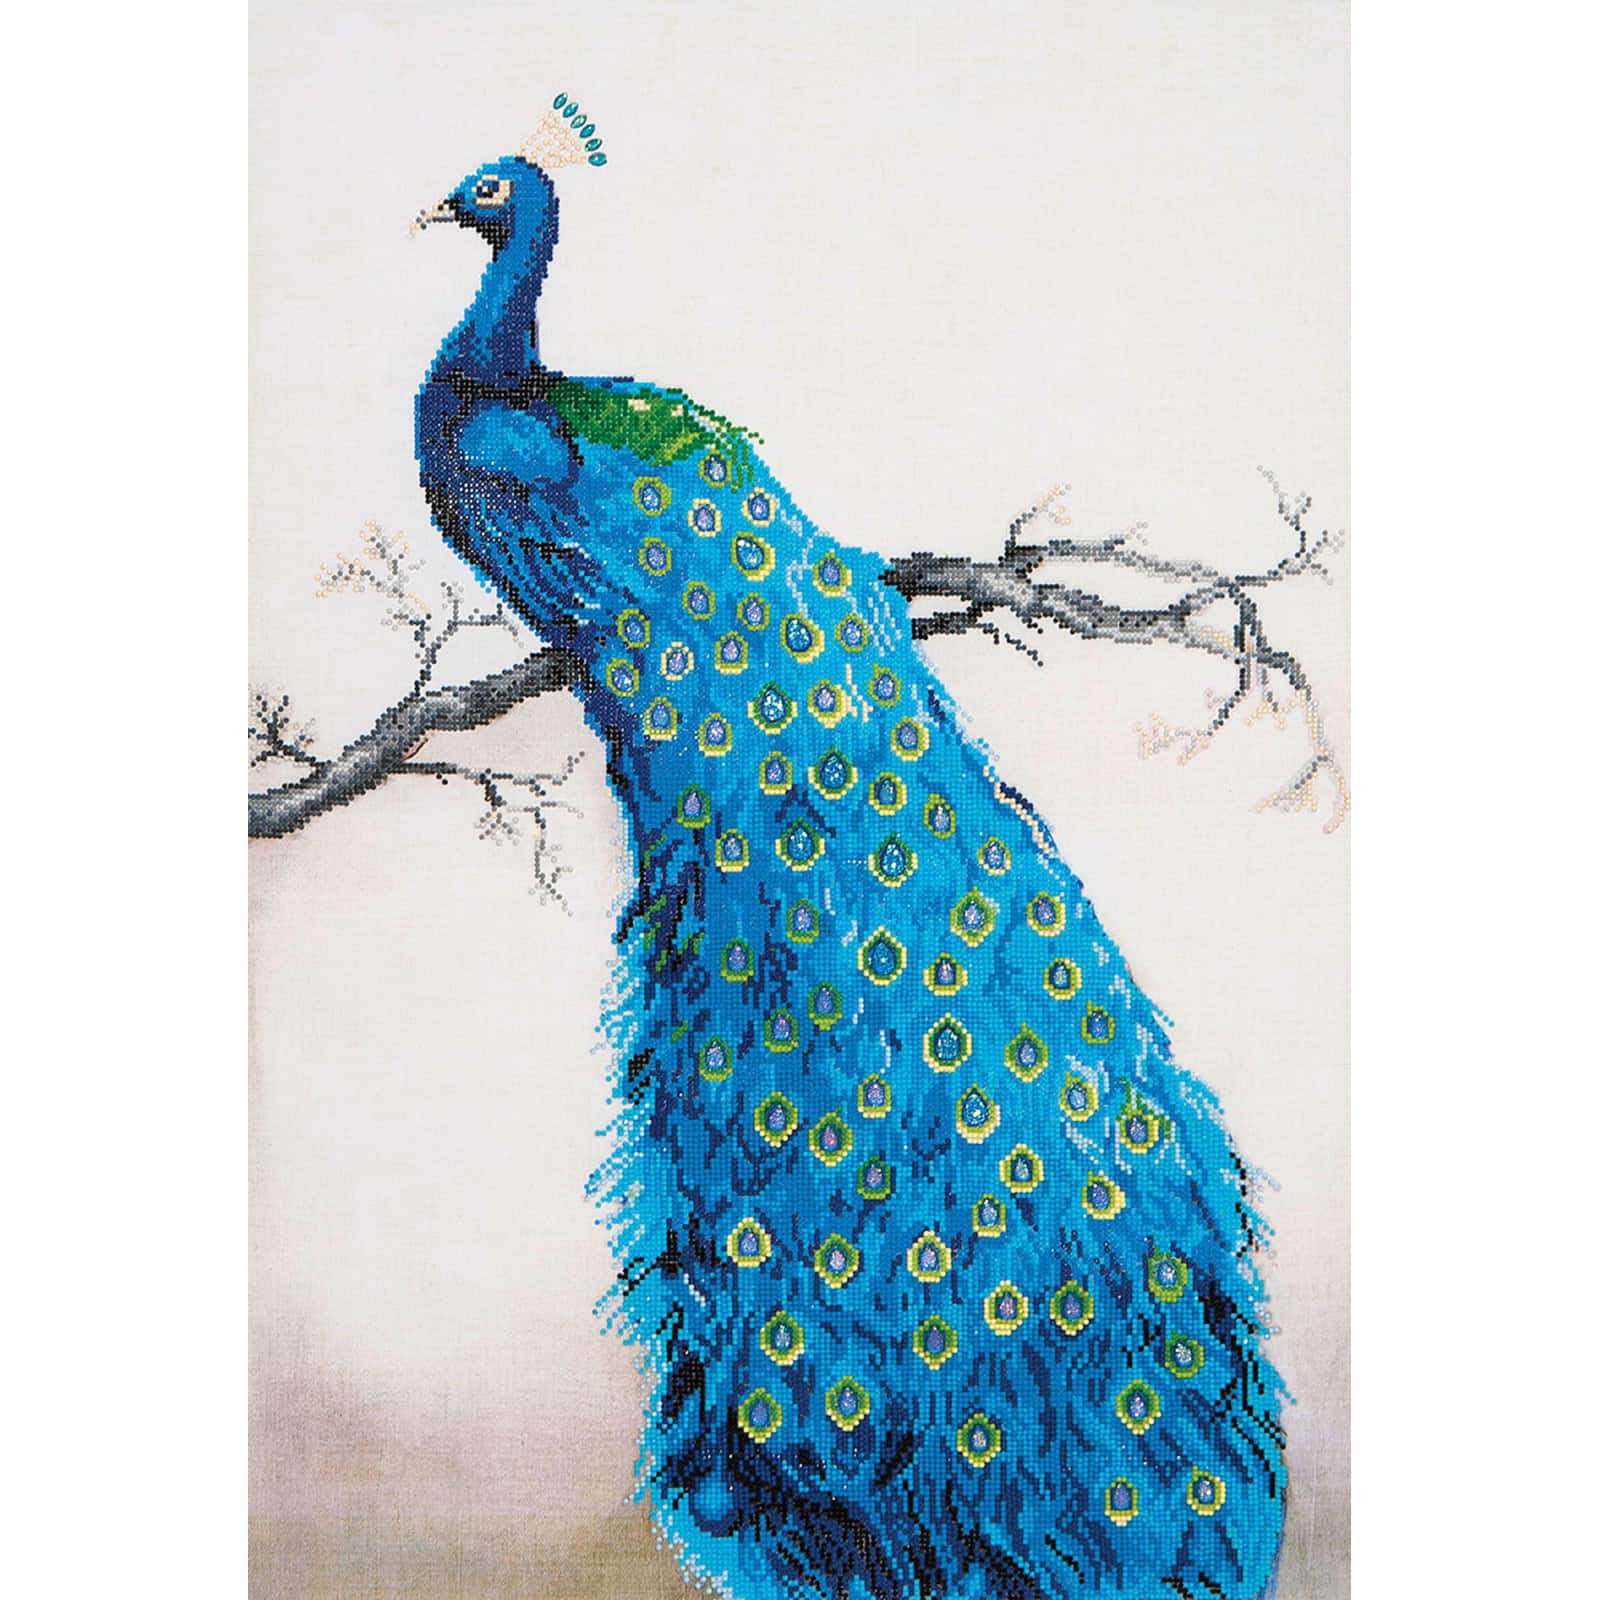 Canvas Art Paint Set Peacock